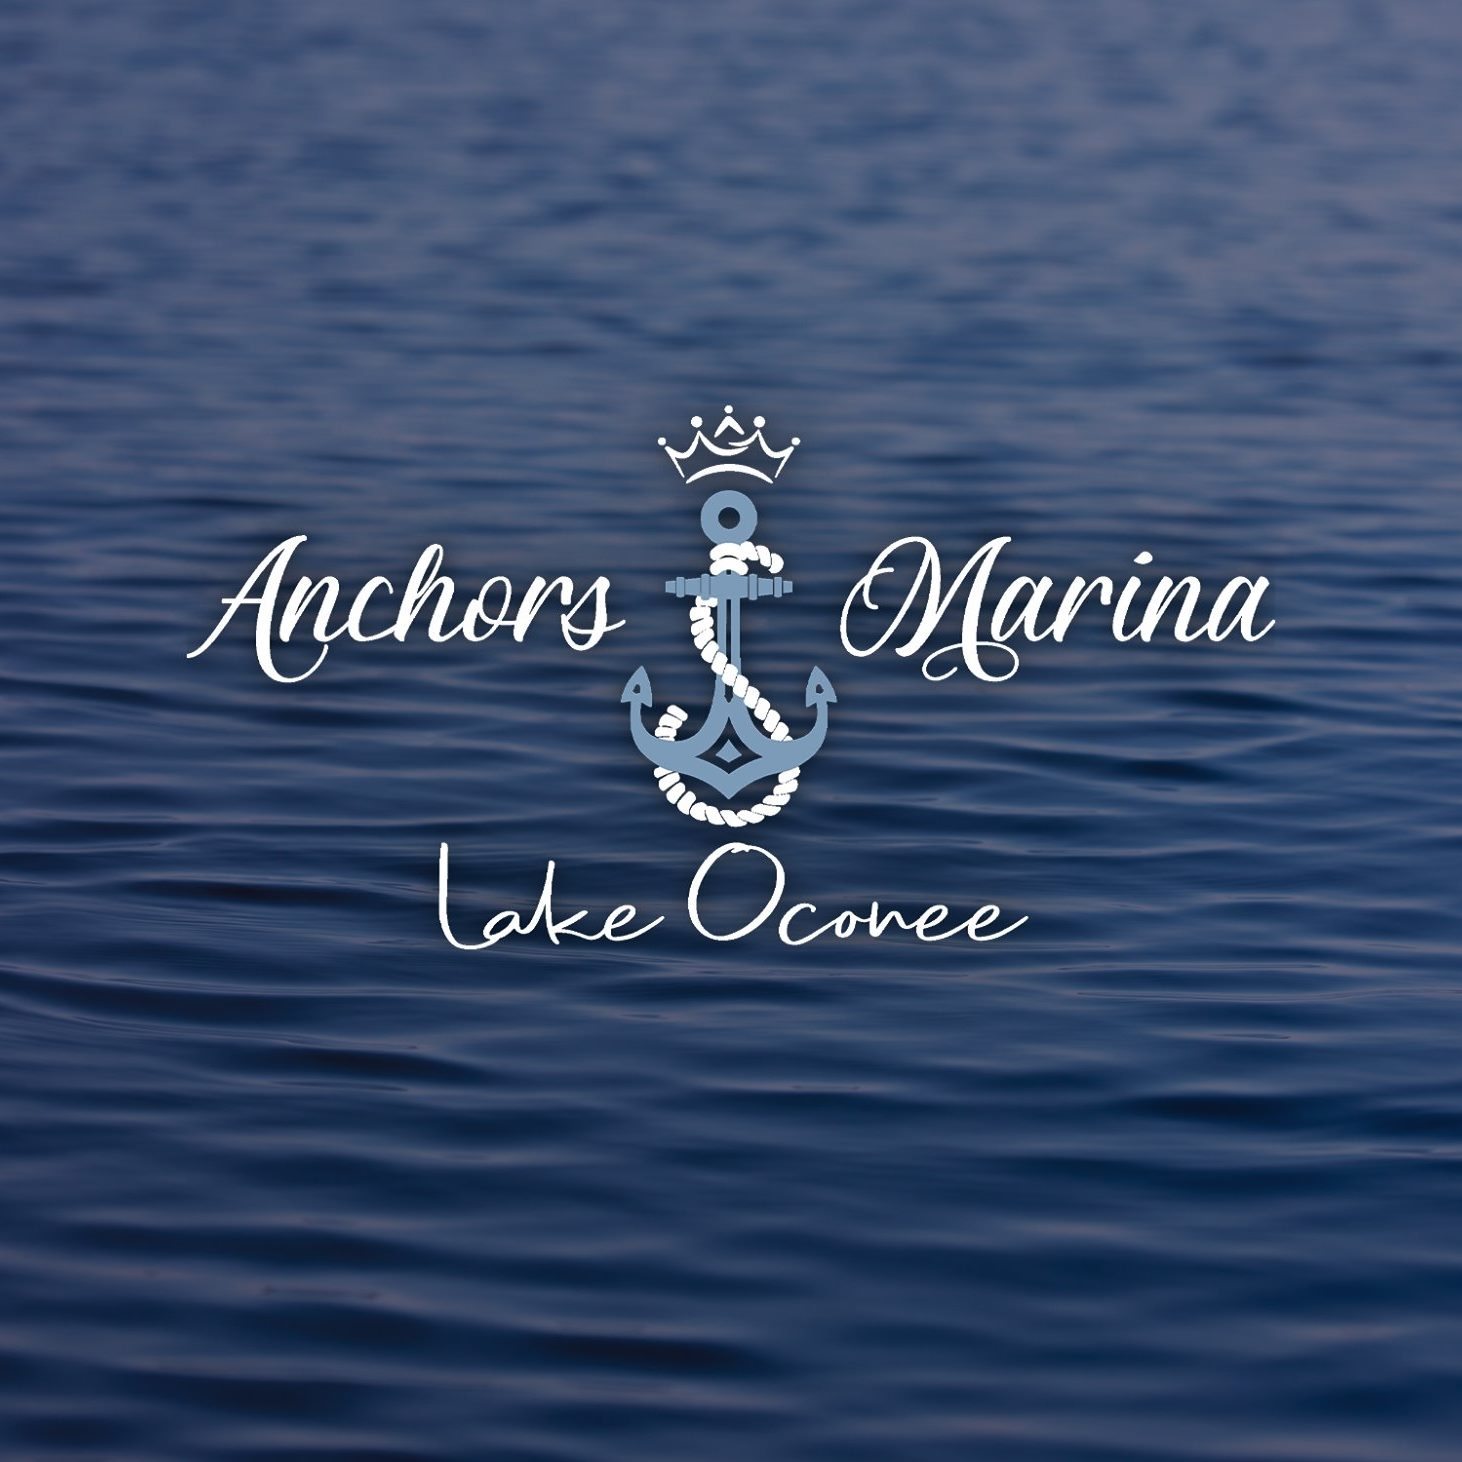 Photo for Anchors Marina